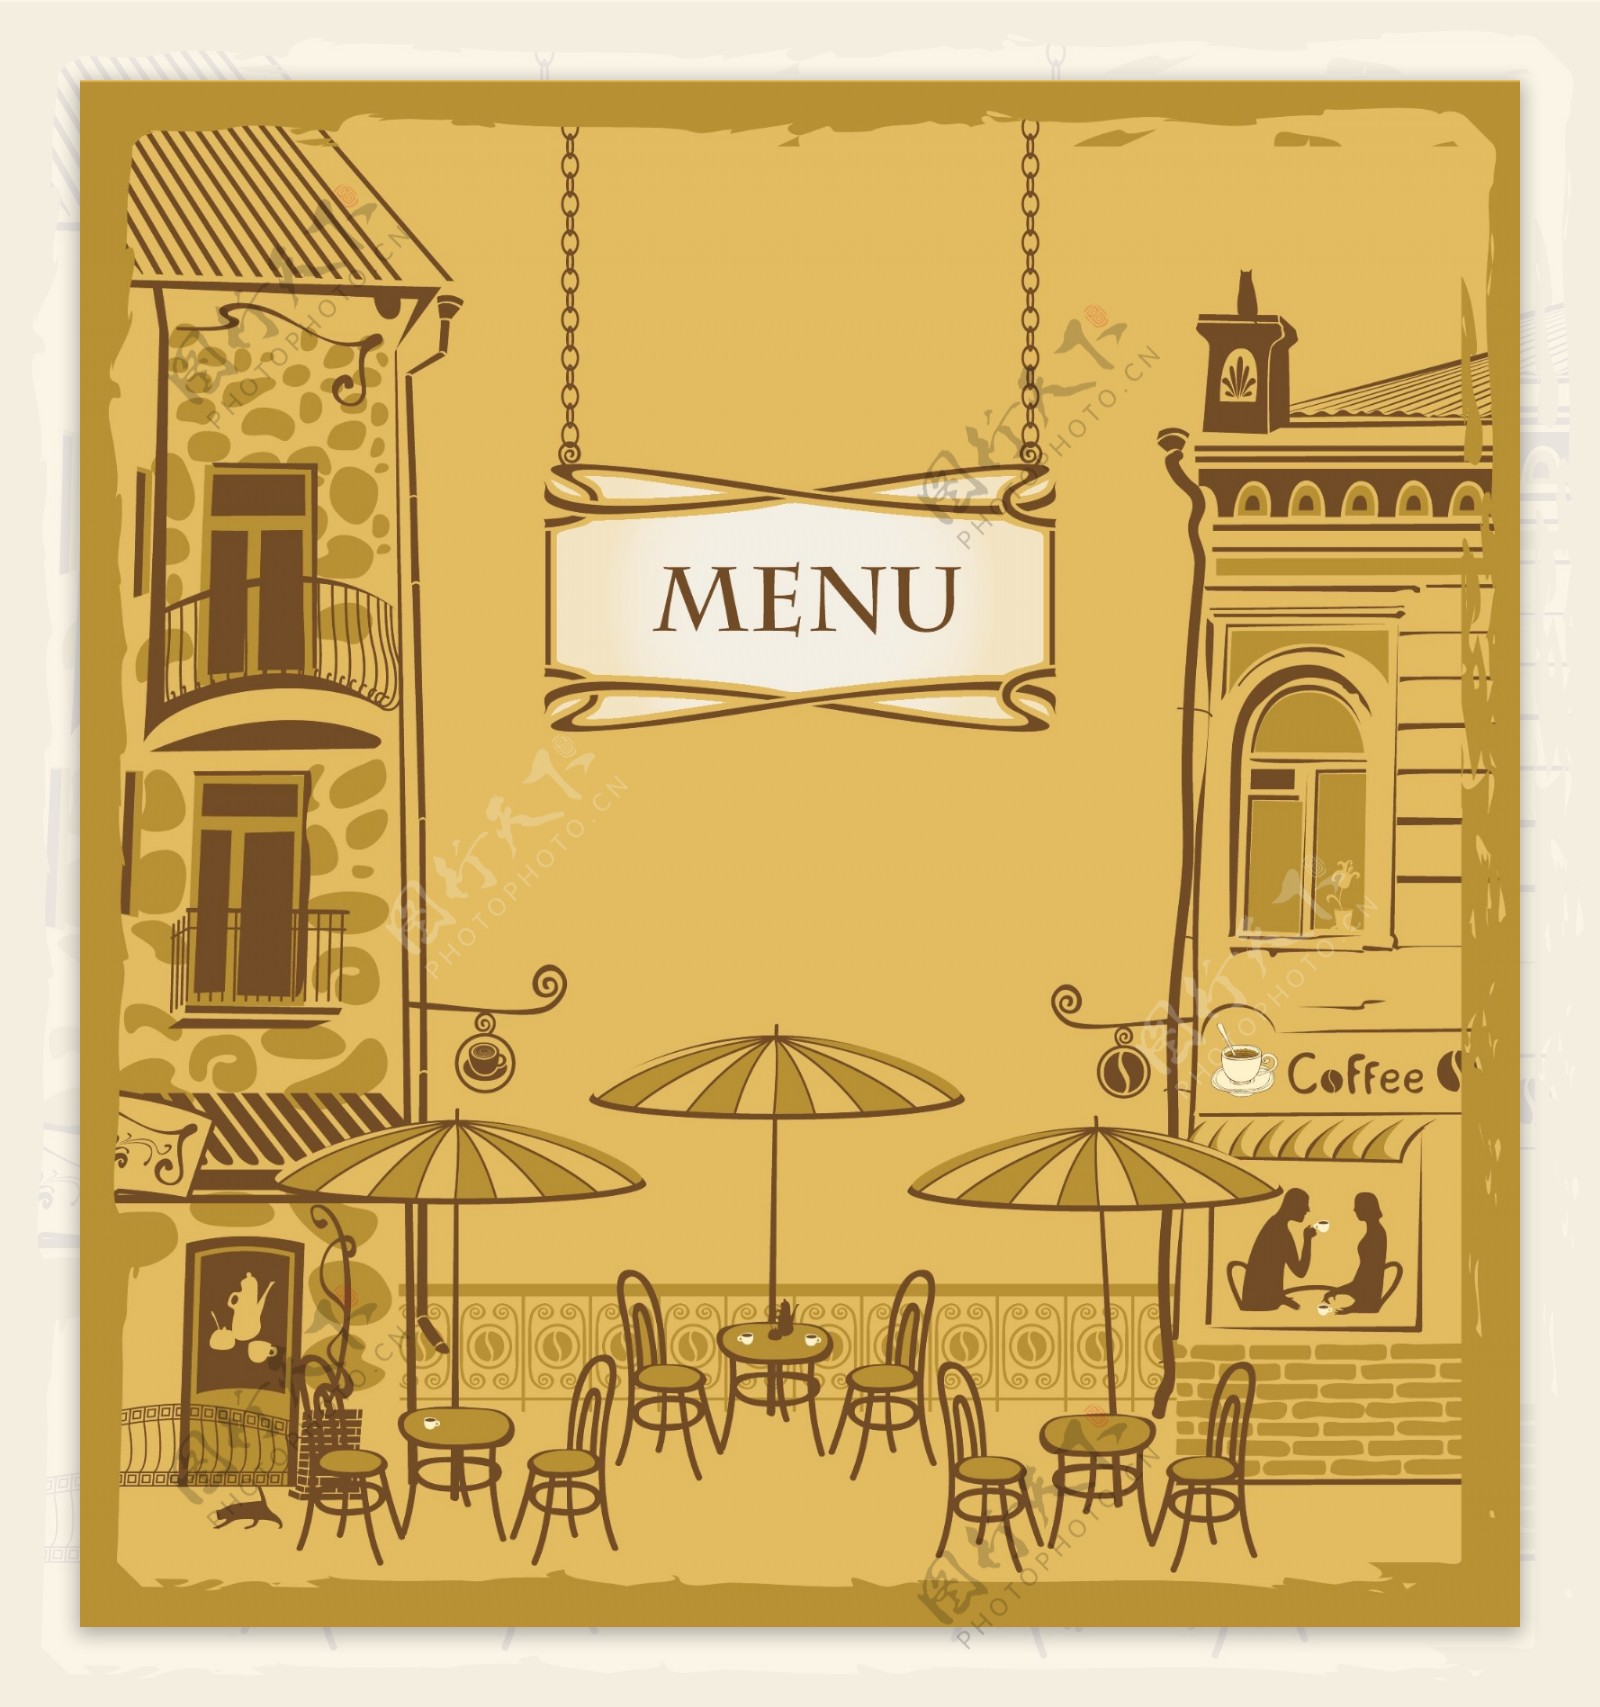 咖啡厅菜单封面设计图片